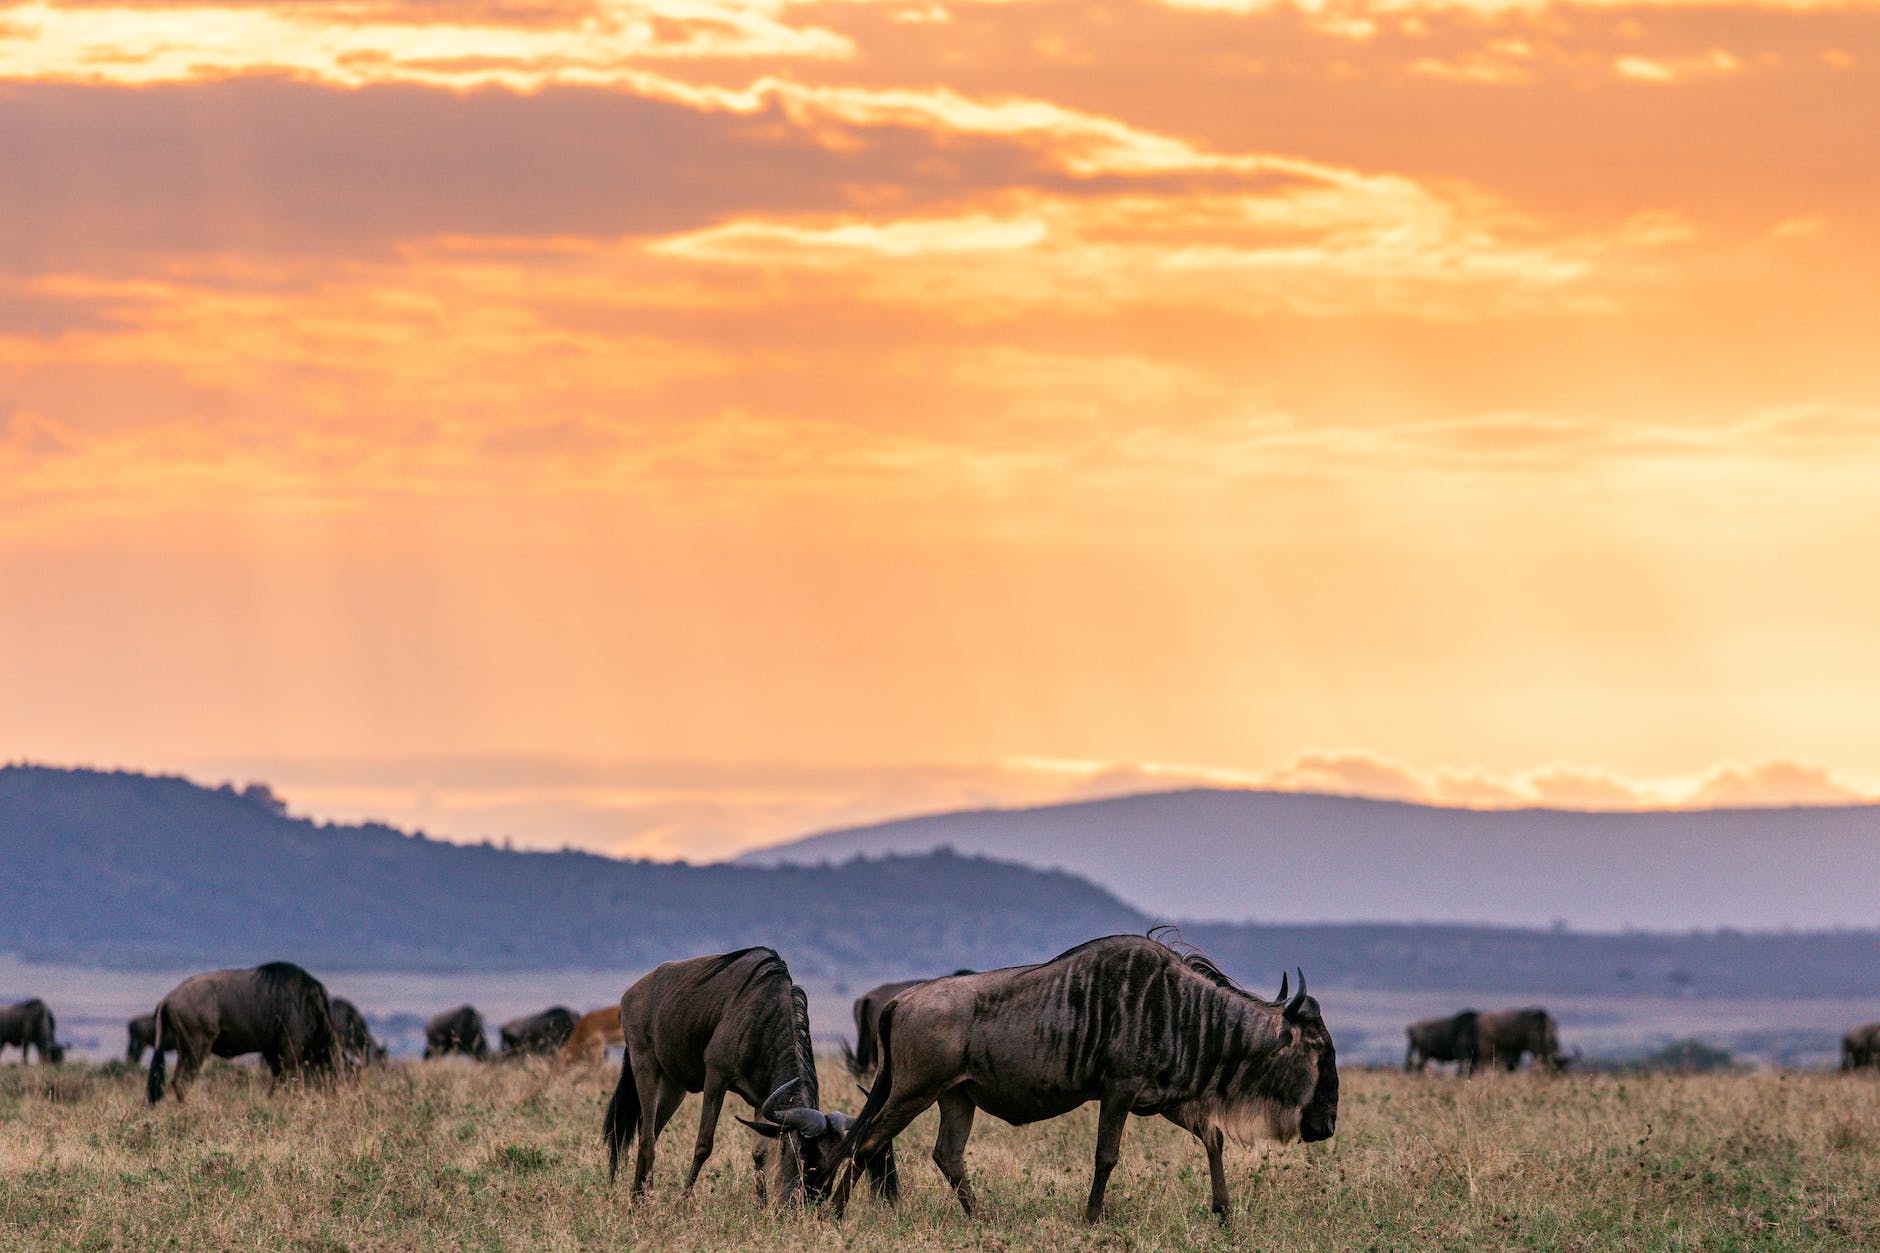 wildebeests standing on grassland in savanna in sunset time